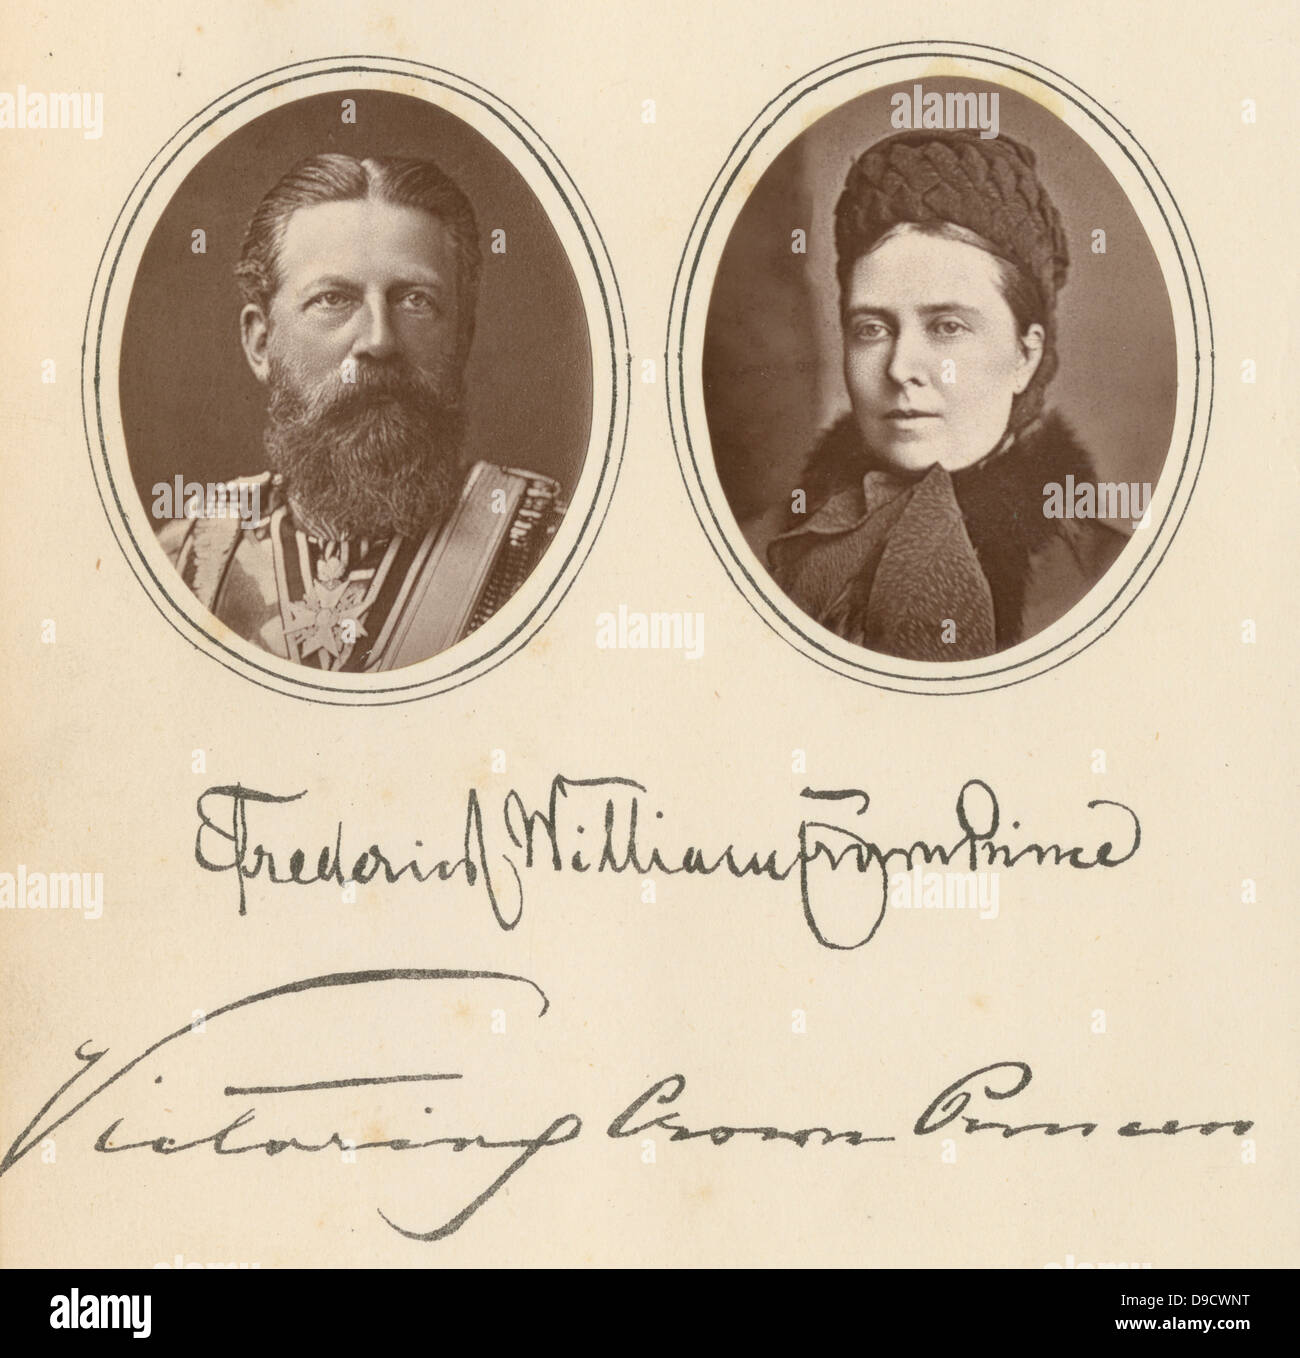 Friedrich III (1831-1888), König von Preußen und der Kaiser von Deutschland für 99 daysin vom 9. März 1888, und seine Frau Victoria (1840-1901) dargestellt. c 1887, während er noch Kronprinz war. Stockfoto